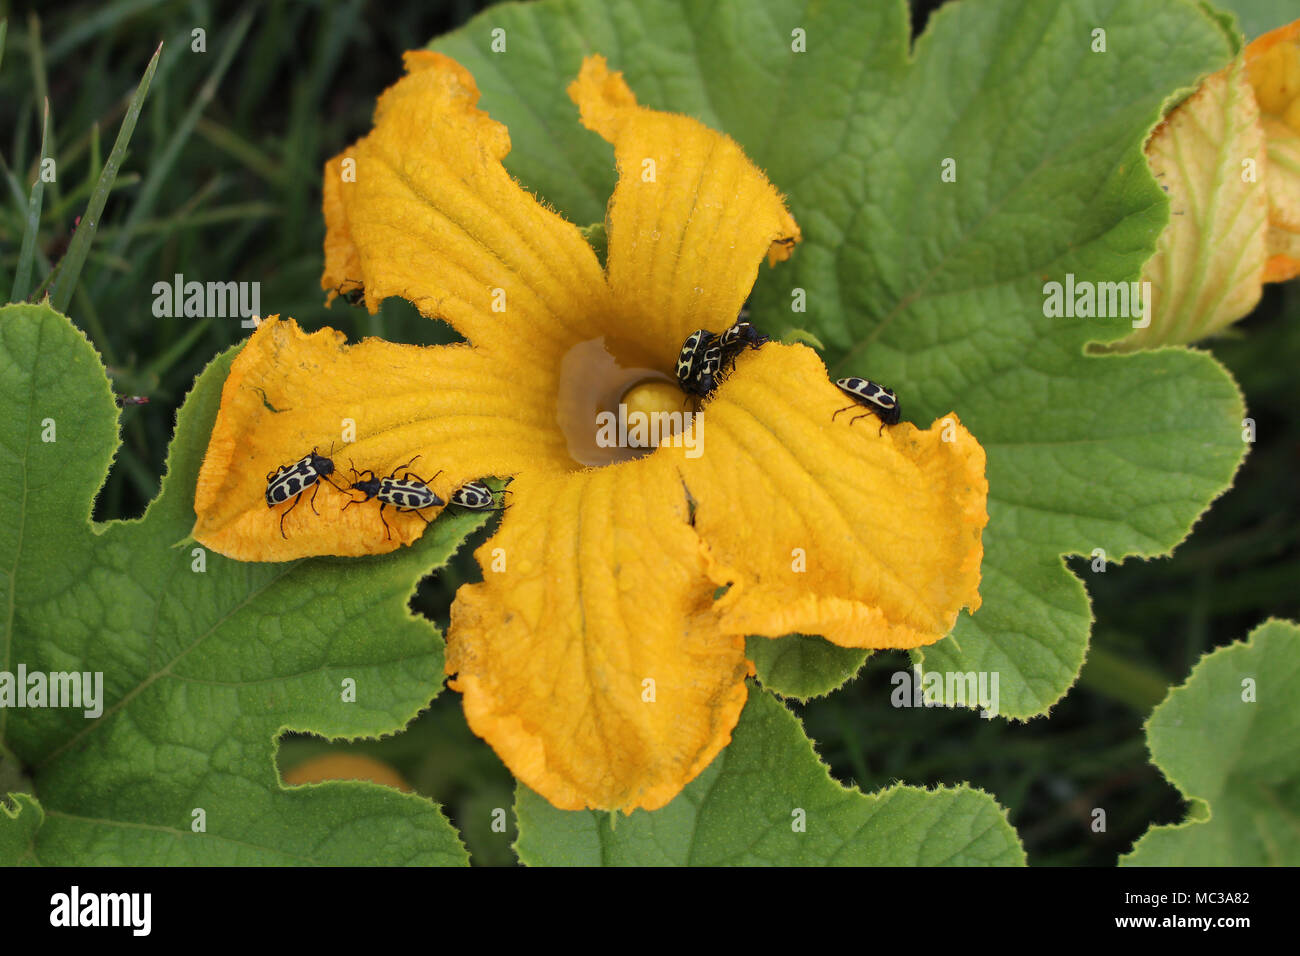 Astylus variegatus bugs on pumpkin flower Stock Photo